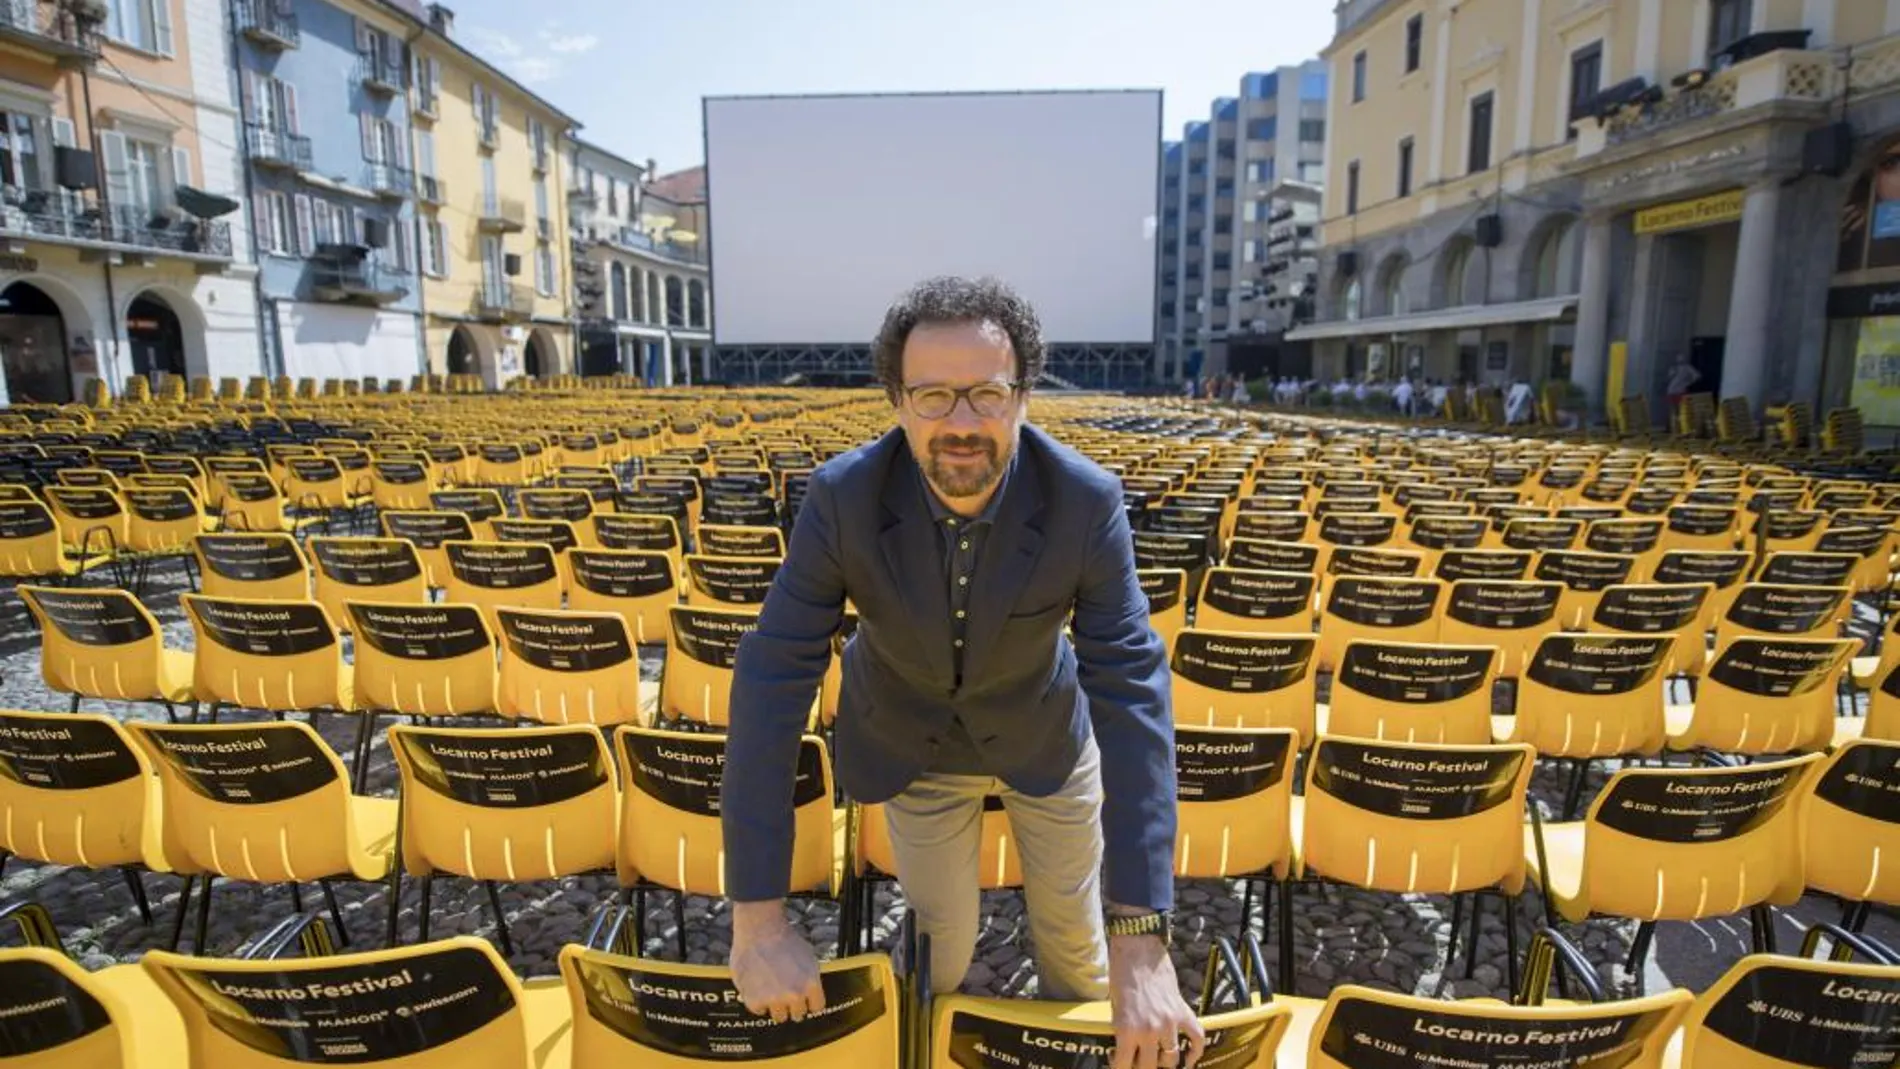 El director de arte del festival, Carlo Chatrian, posa para la cámara en la Piazza Grande durante la 70 edición de Festival Internacional de Cine de Locarno (Italia)